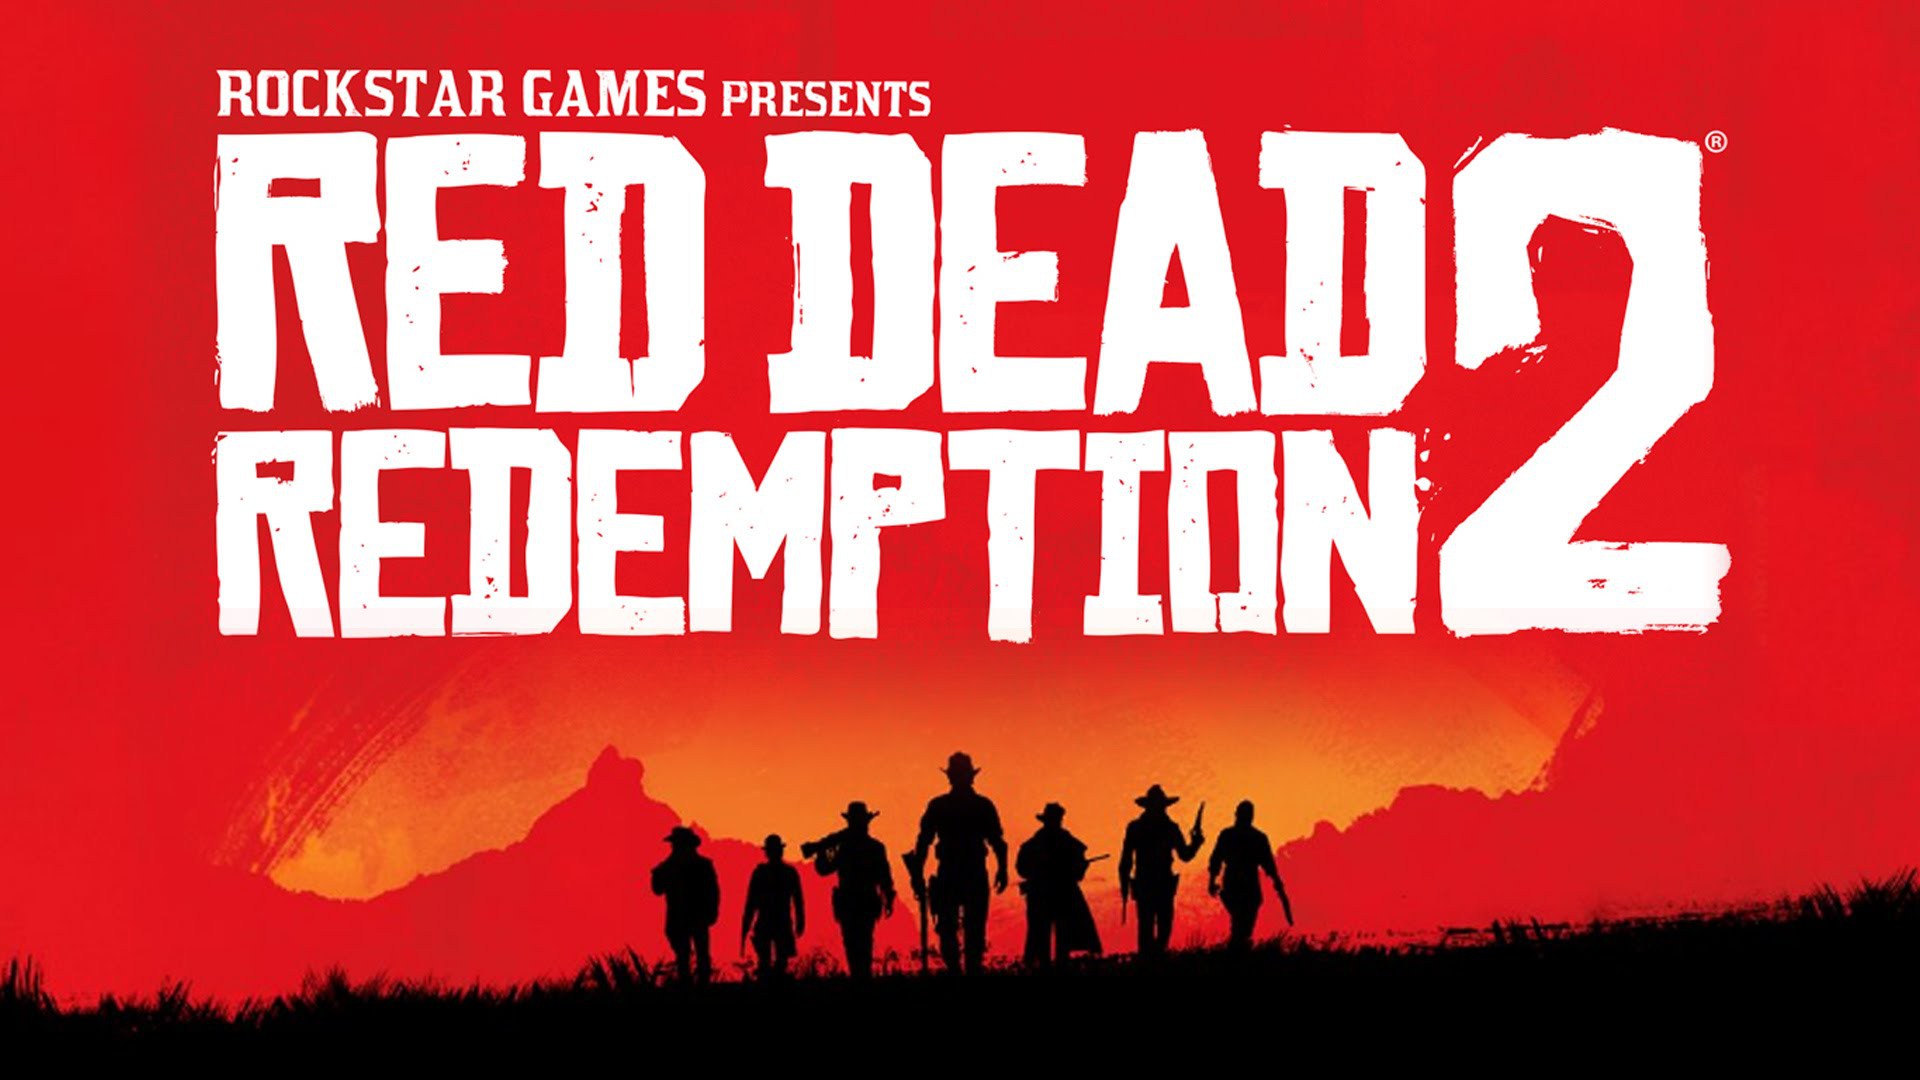 Red Dead Redemption - PS4 (Mídia Física) - Nova Era Games e